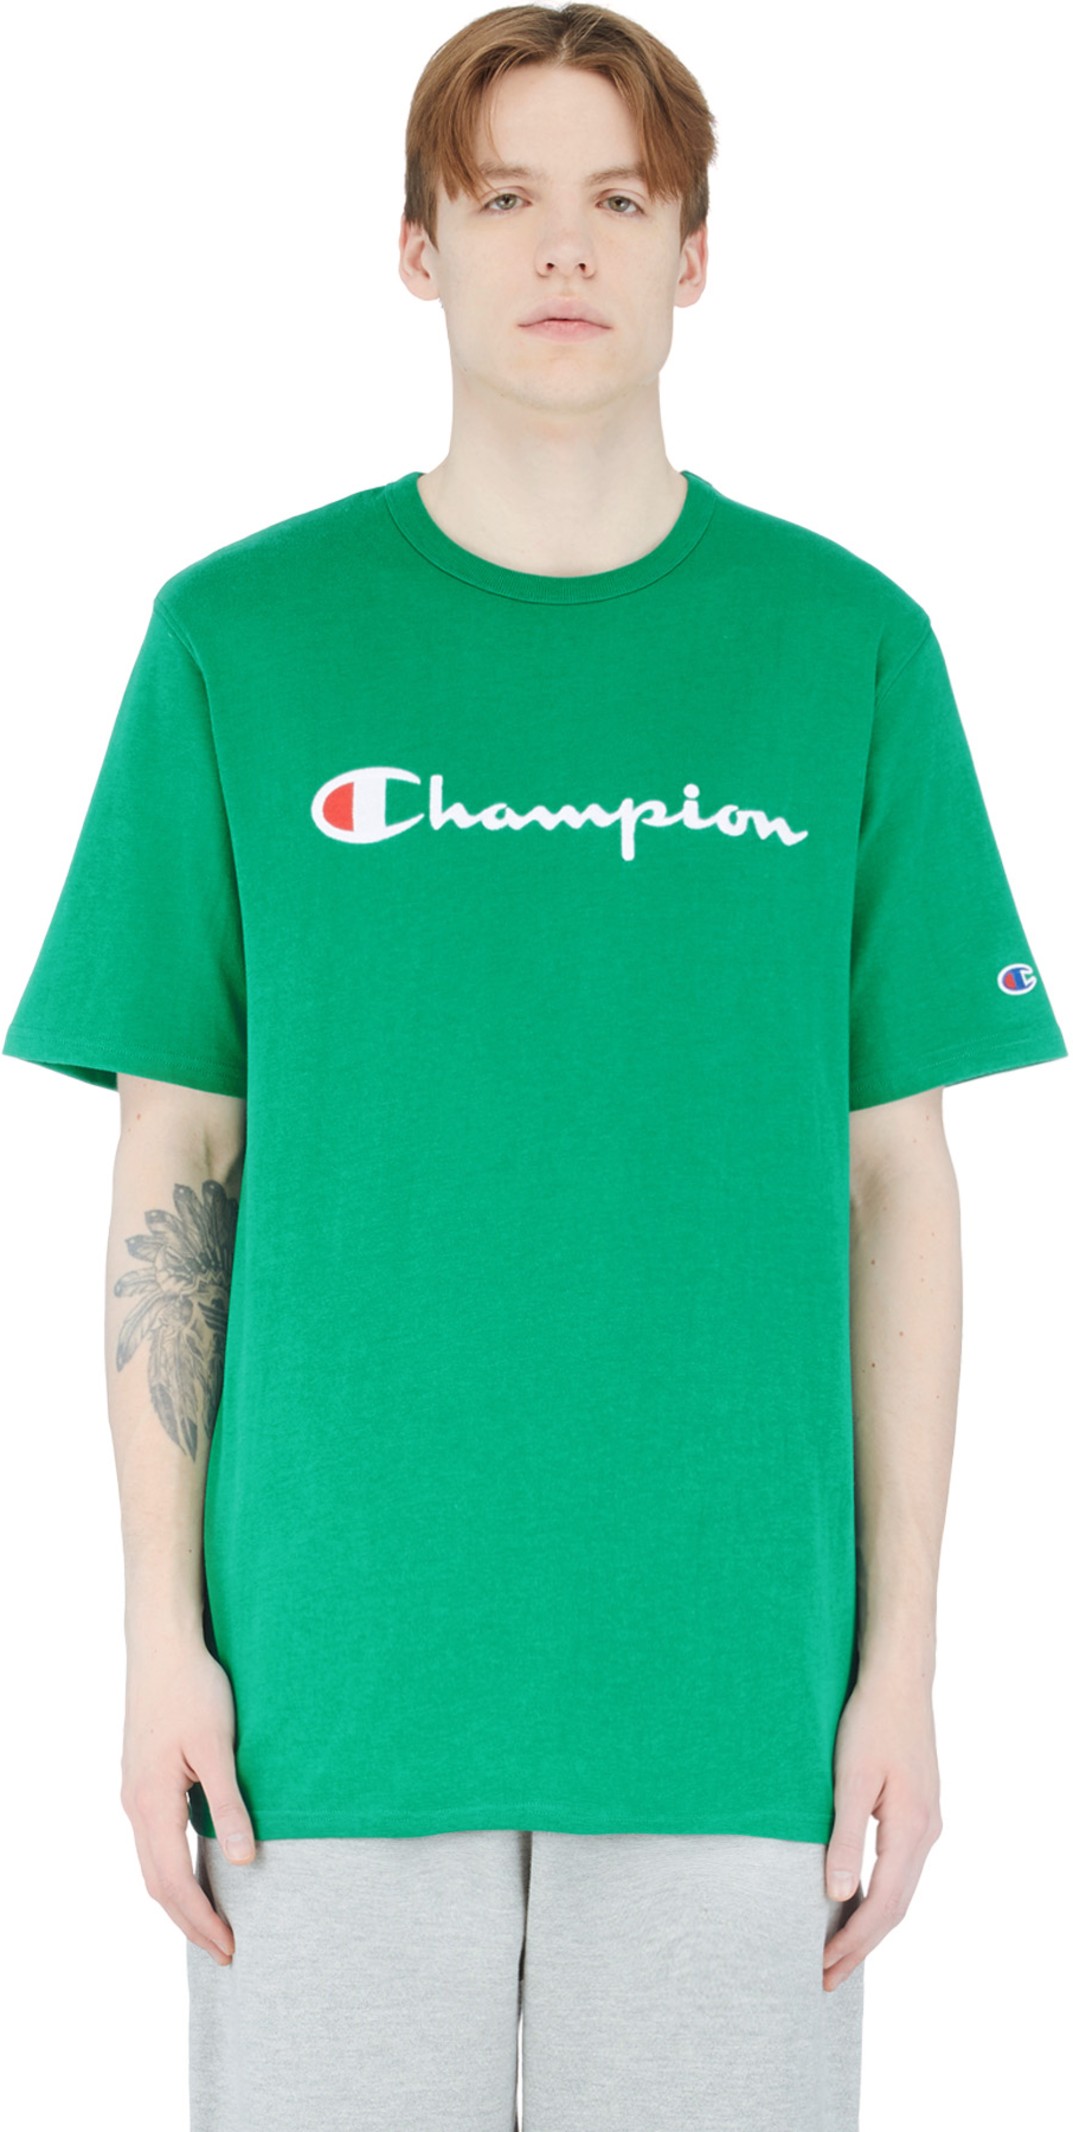 champion green tshirt